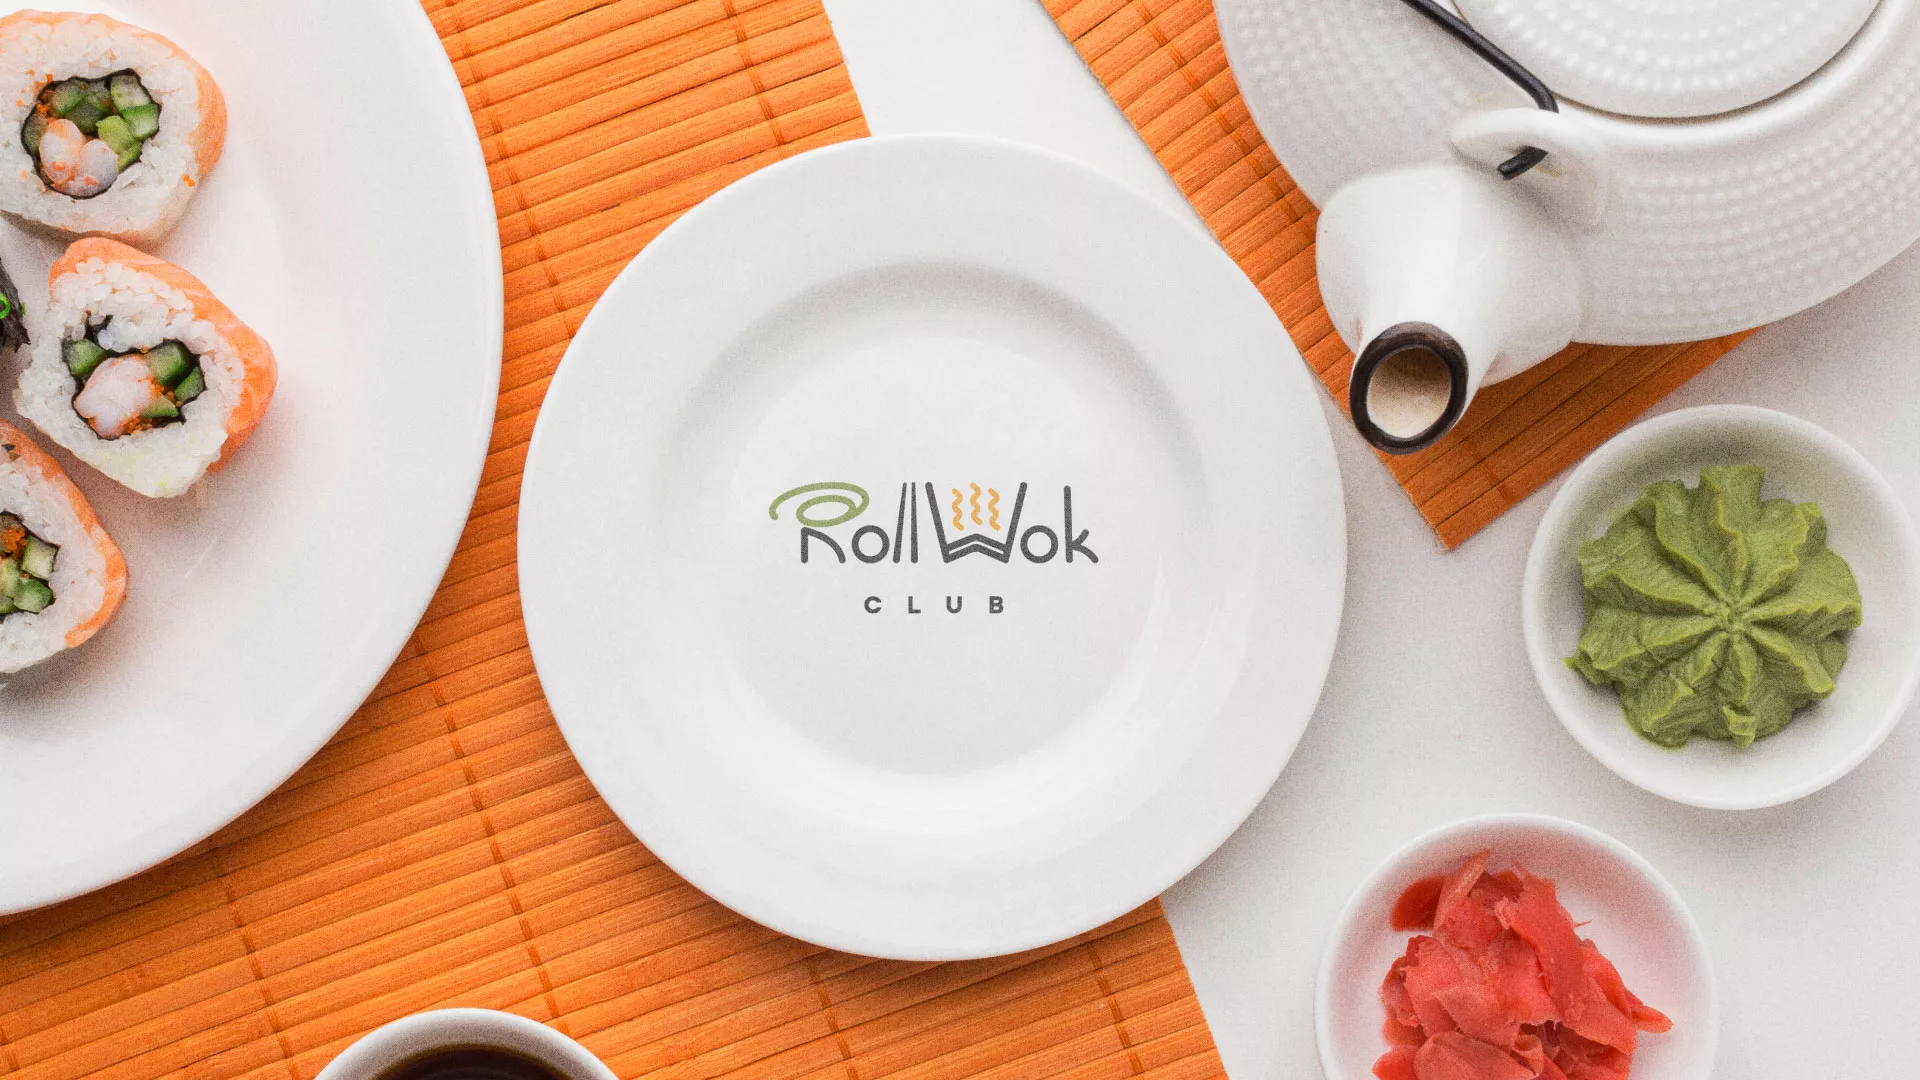 Разработка логотипа и фирменного стиля суши-бара «Roll Wok Club» в Южно-Сахалинске